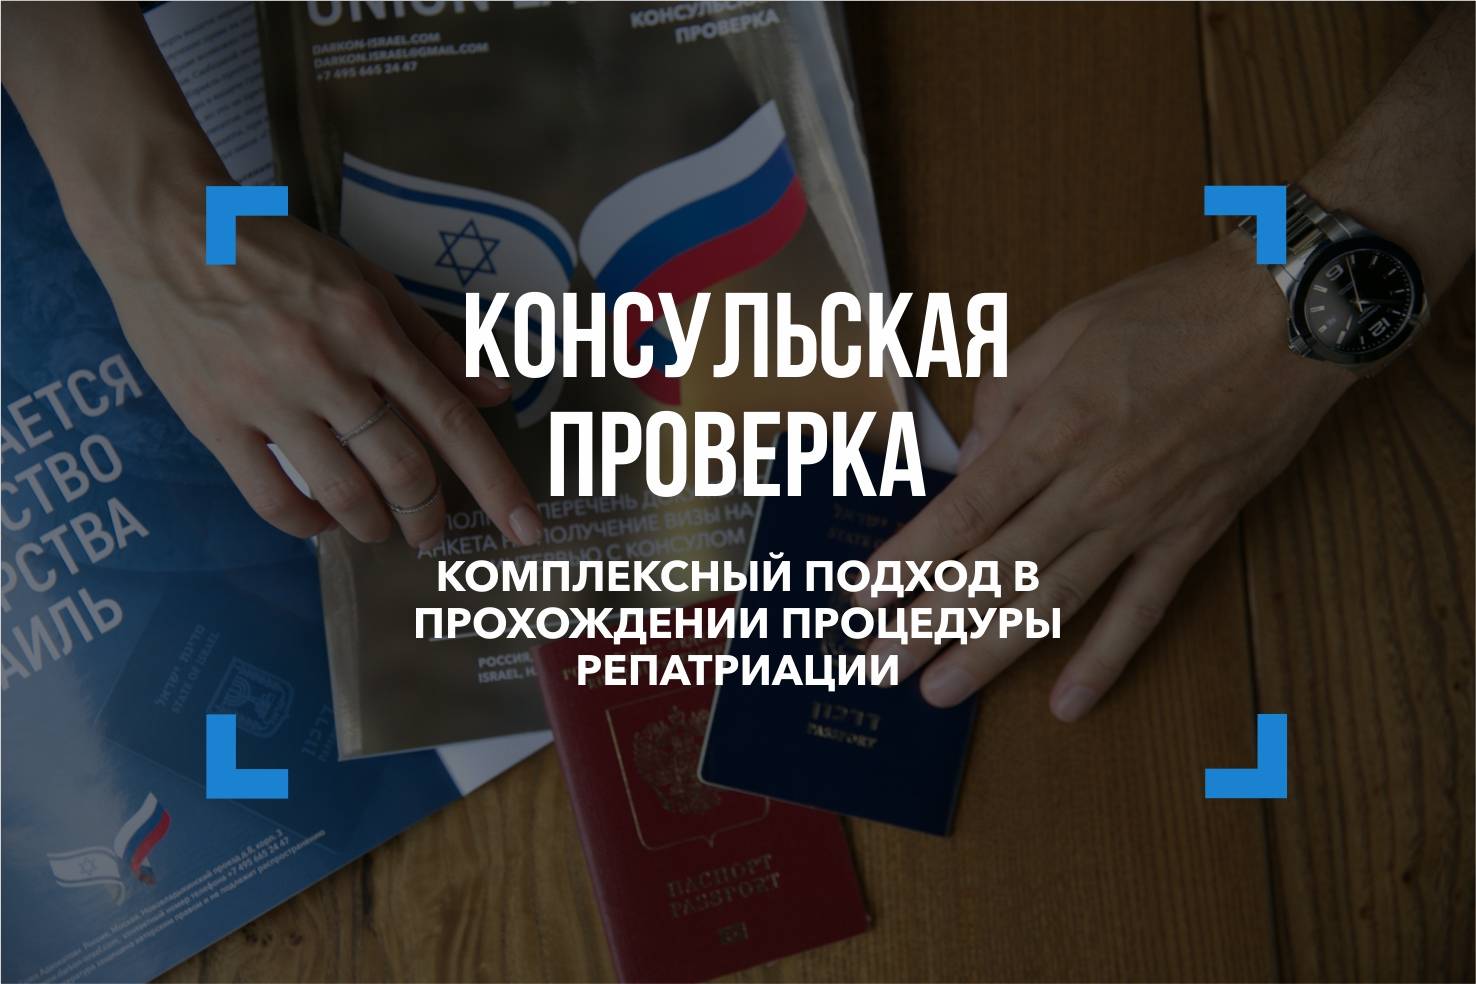 Израильское посольство в москве — адрес, отдел репатриации, сайт | provizu.ru